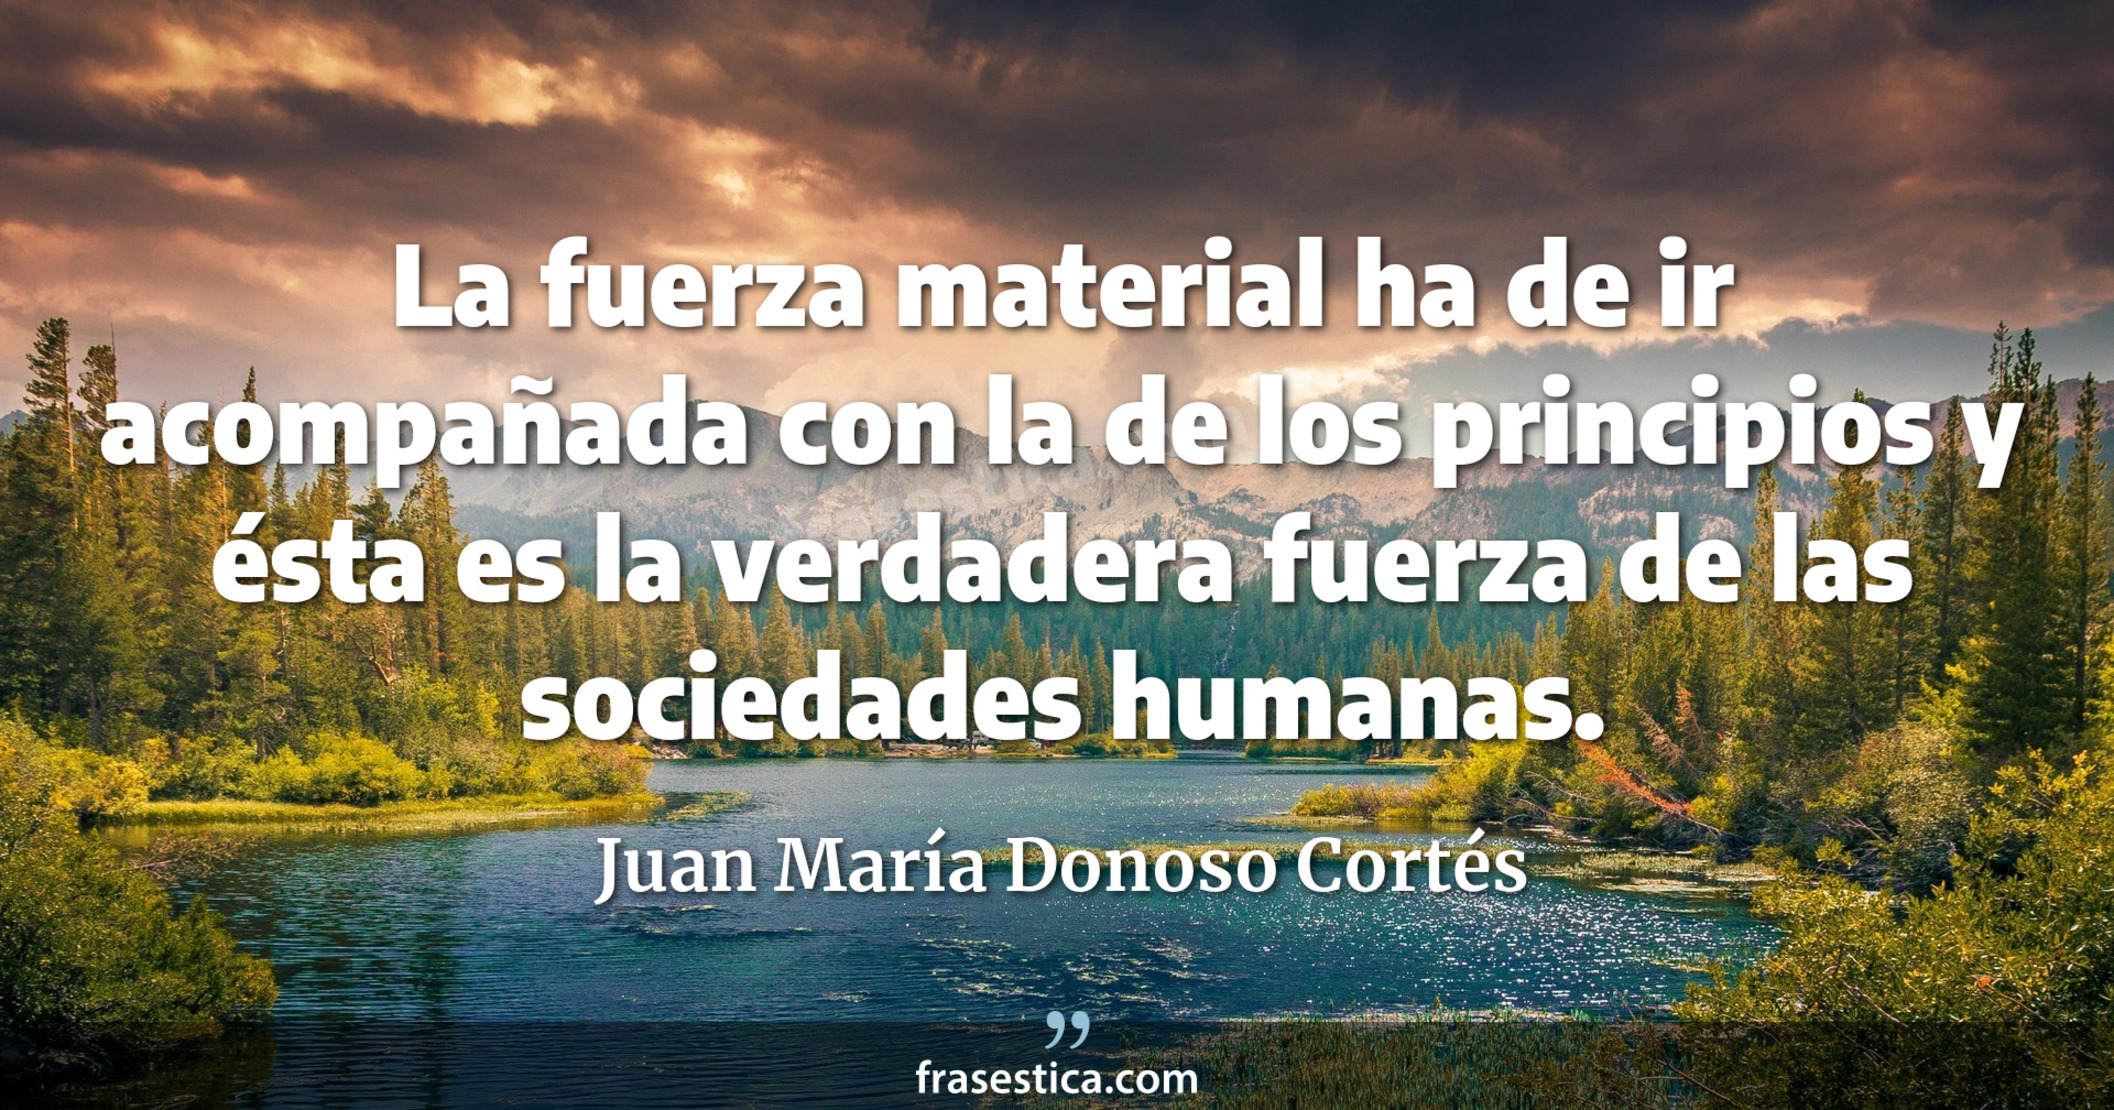 La fuerza material ha de ir acompañada con la de los principios y ésta es la verdadera fuerza de las sociedades humanas. - Juan María Donoso Cortés